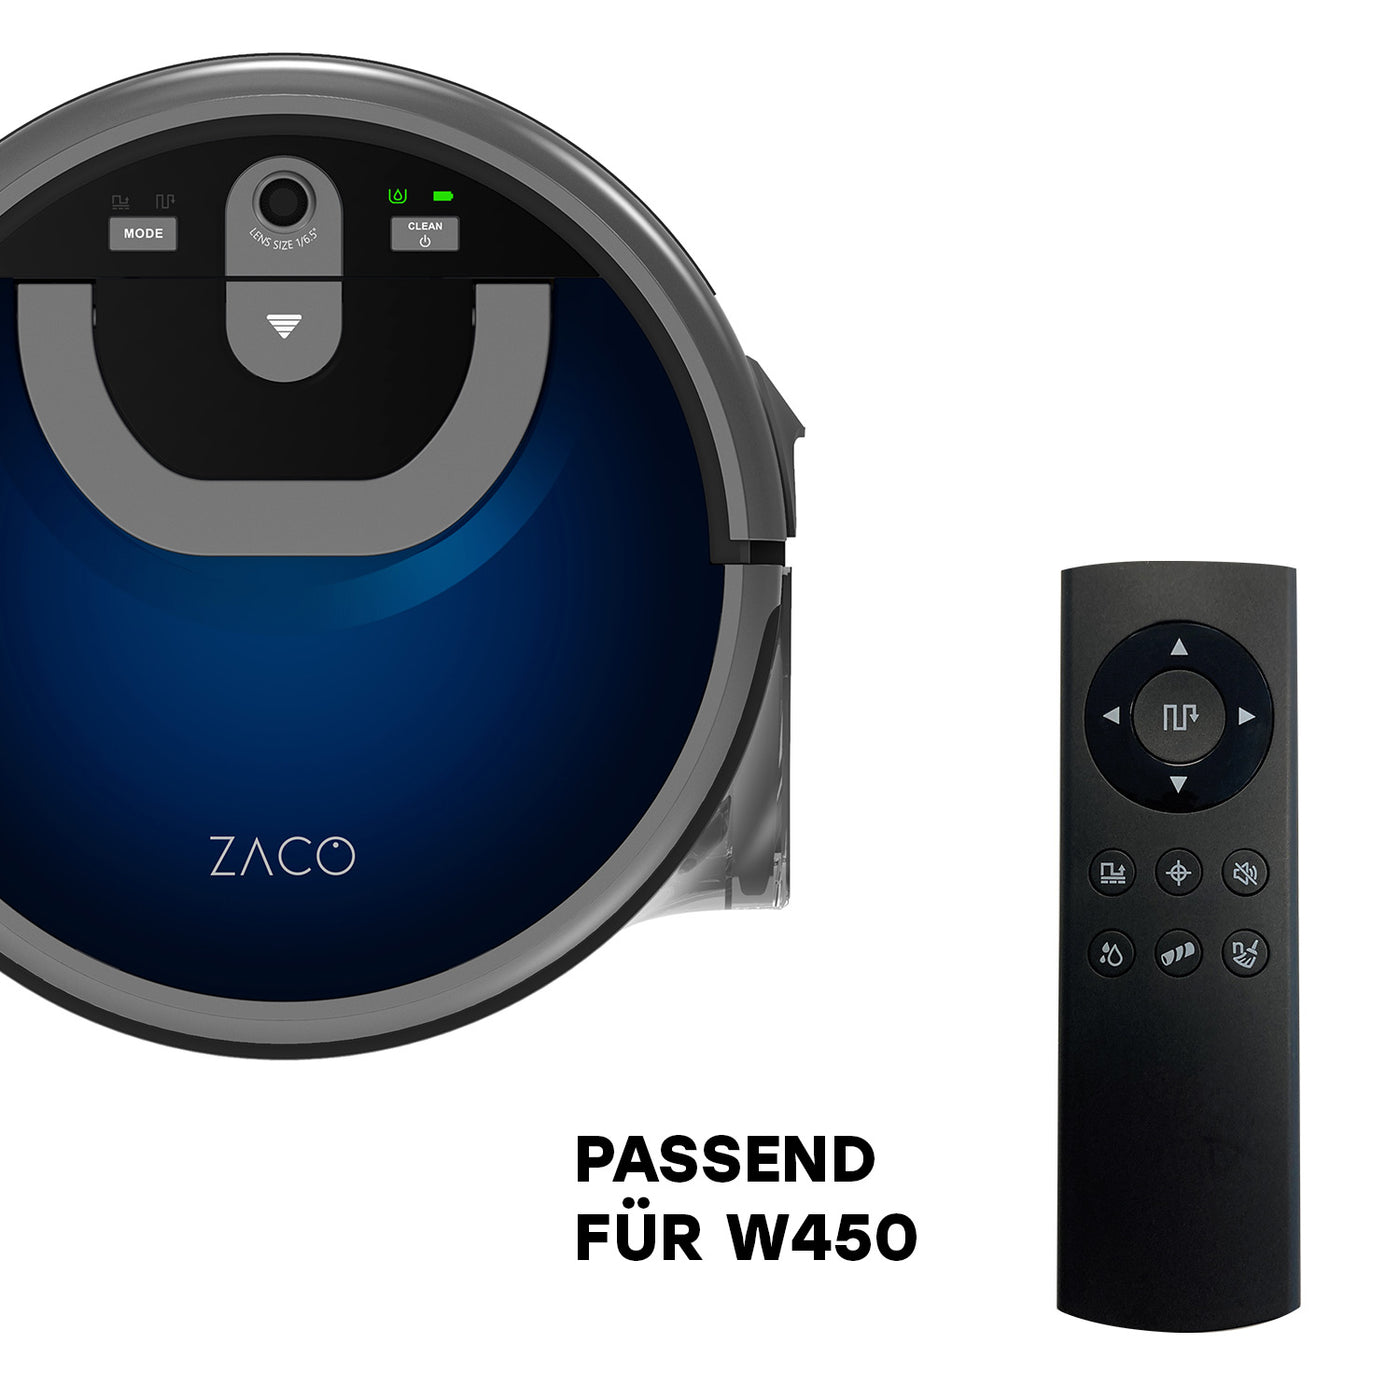 Spare ZACO remote control